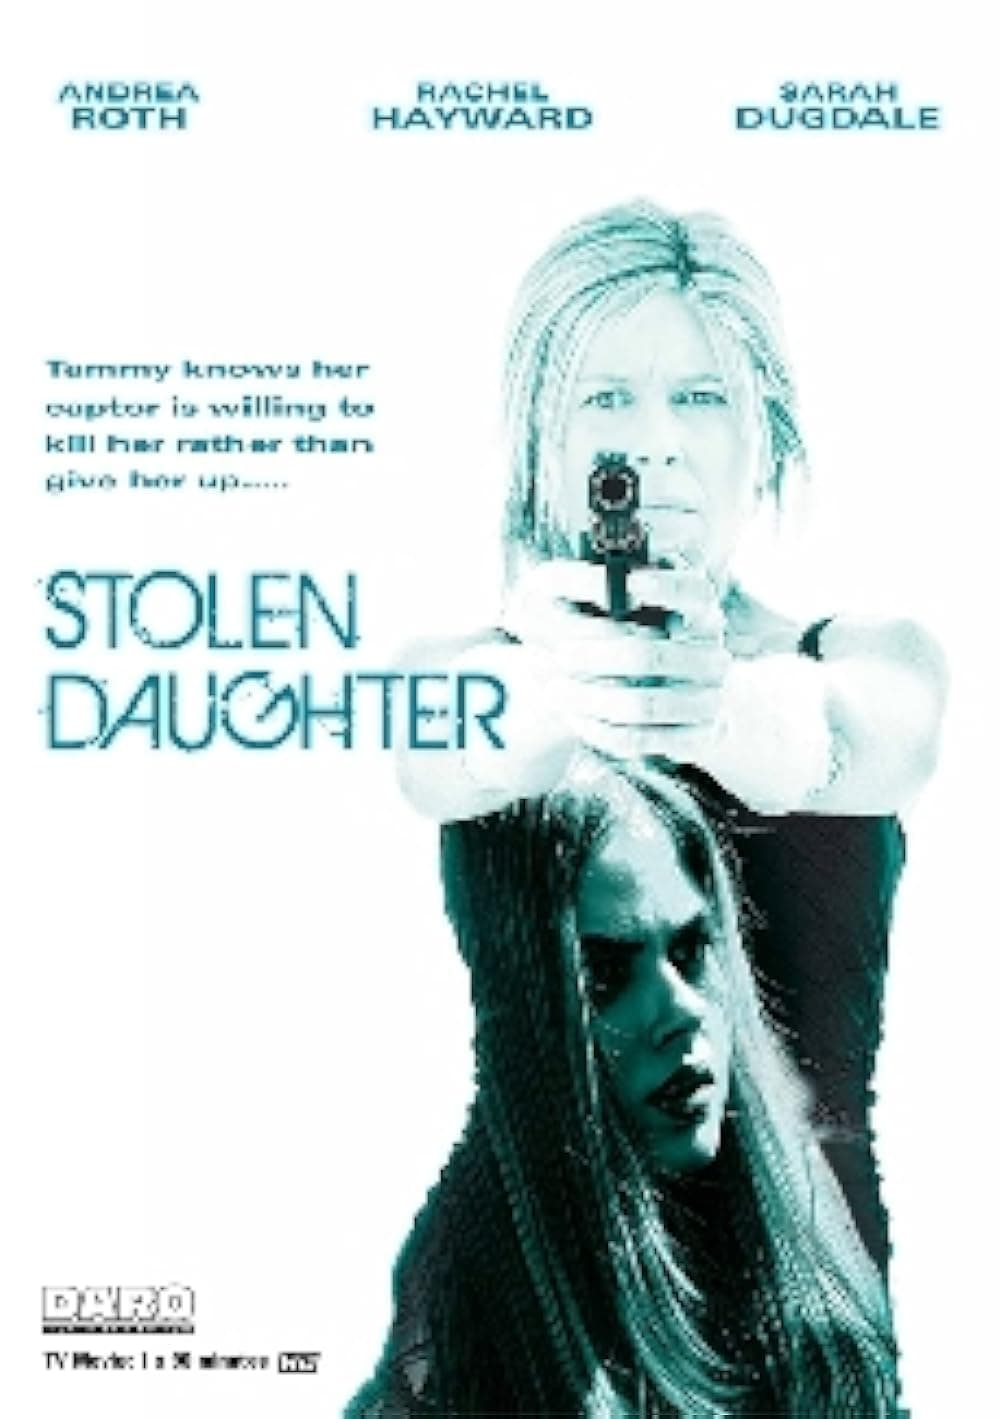 Kẻ Cắp Con Gái (Stolen Daughter) [2015]